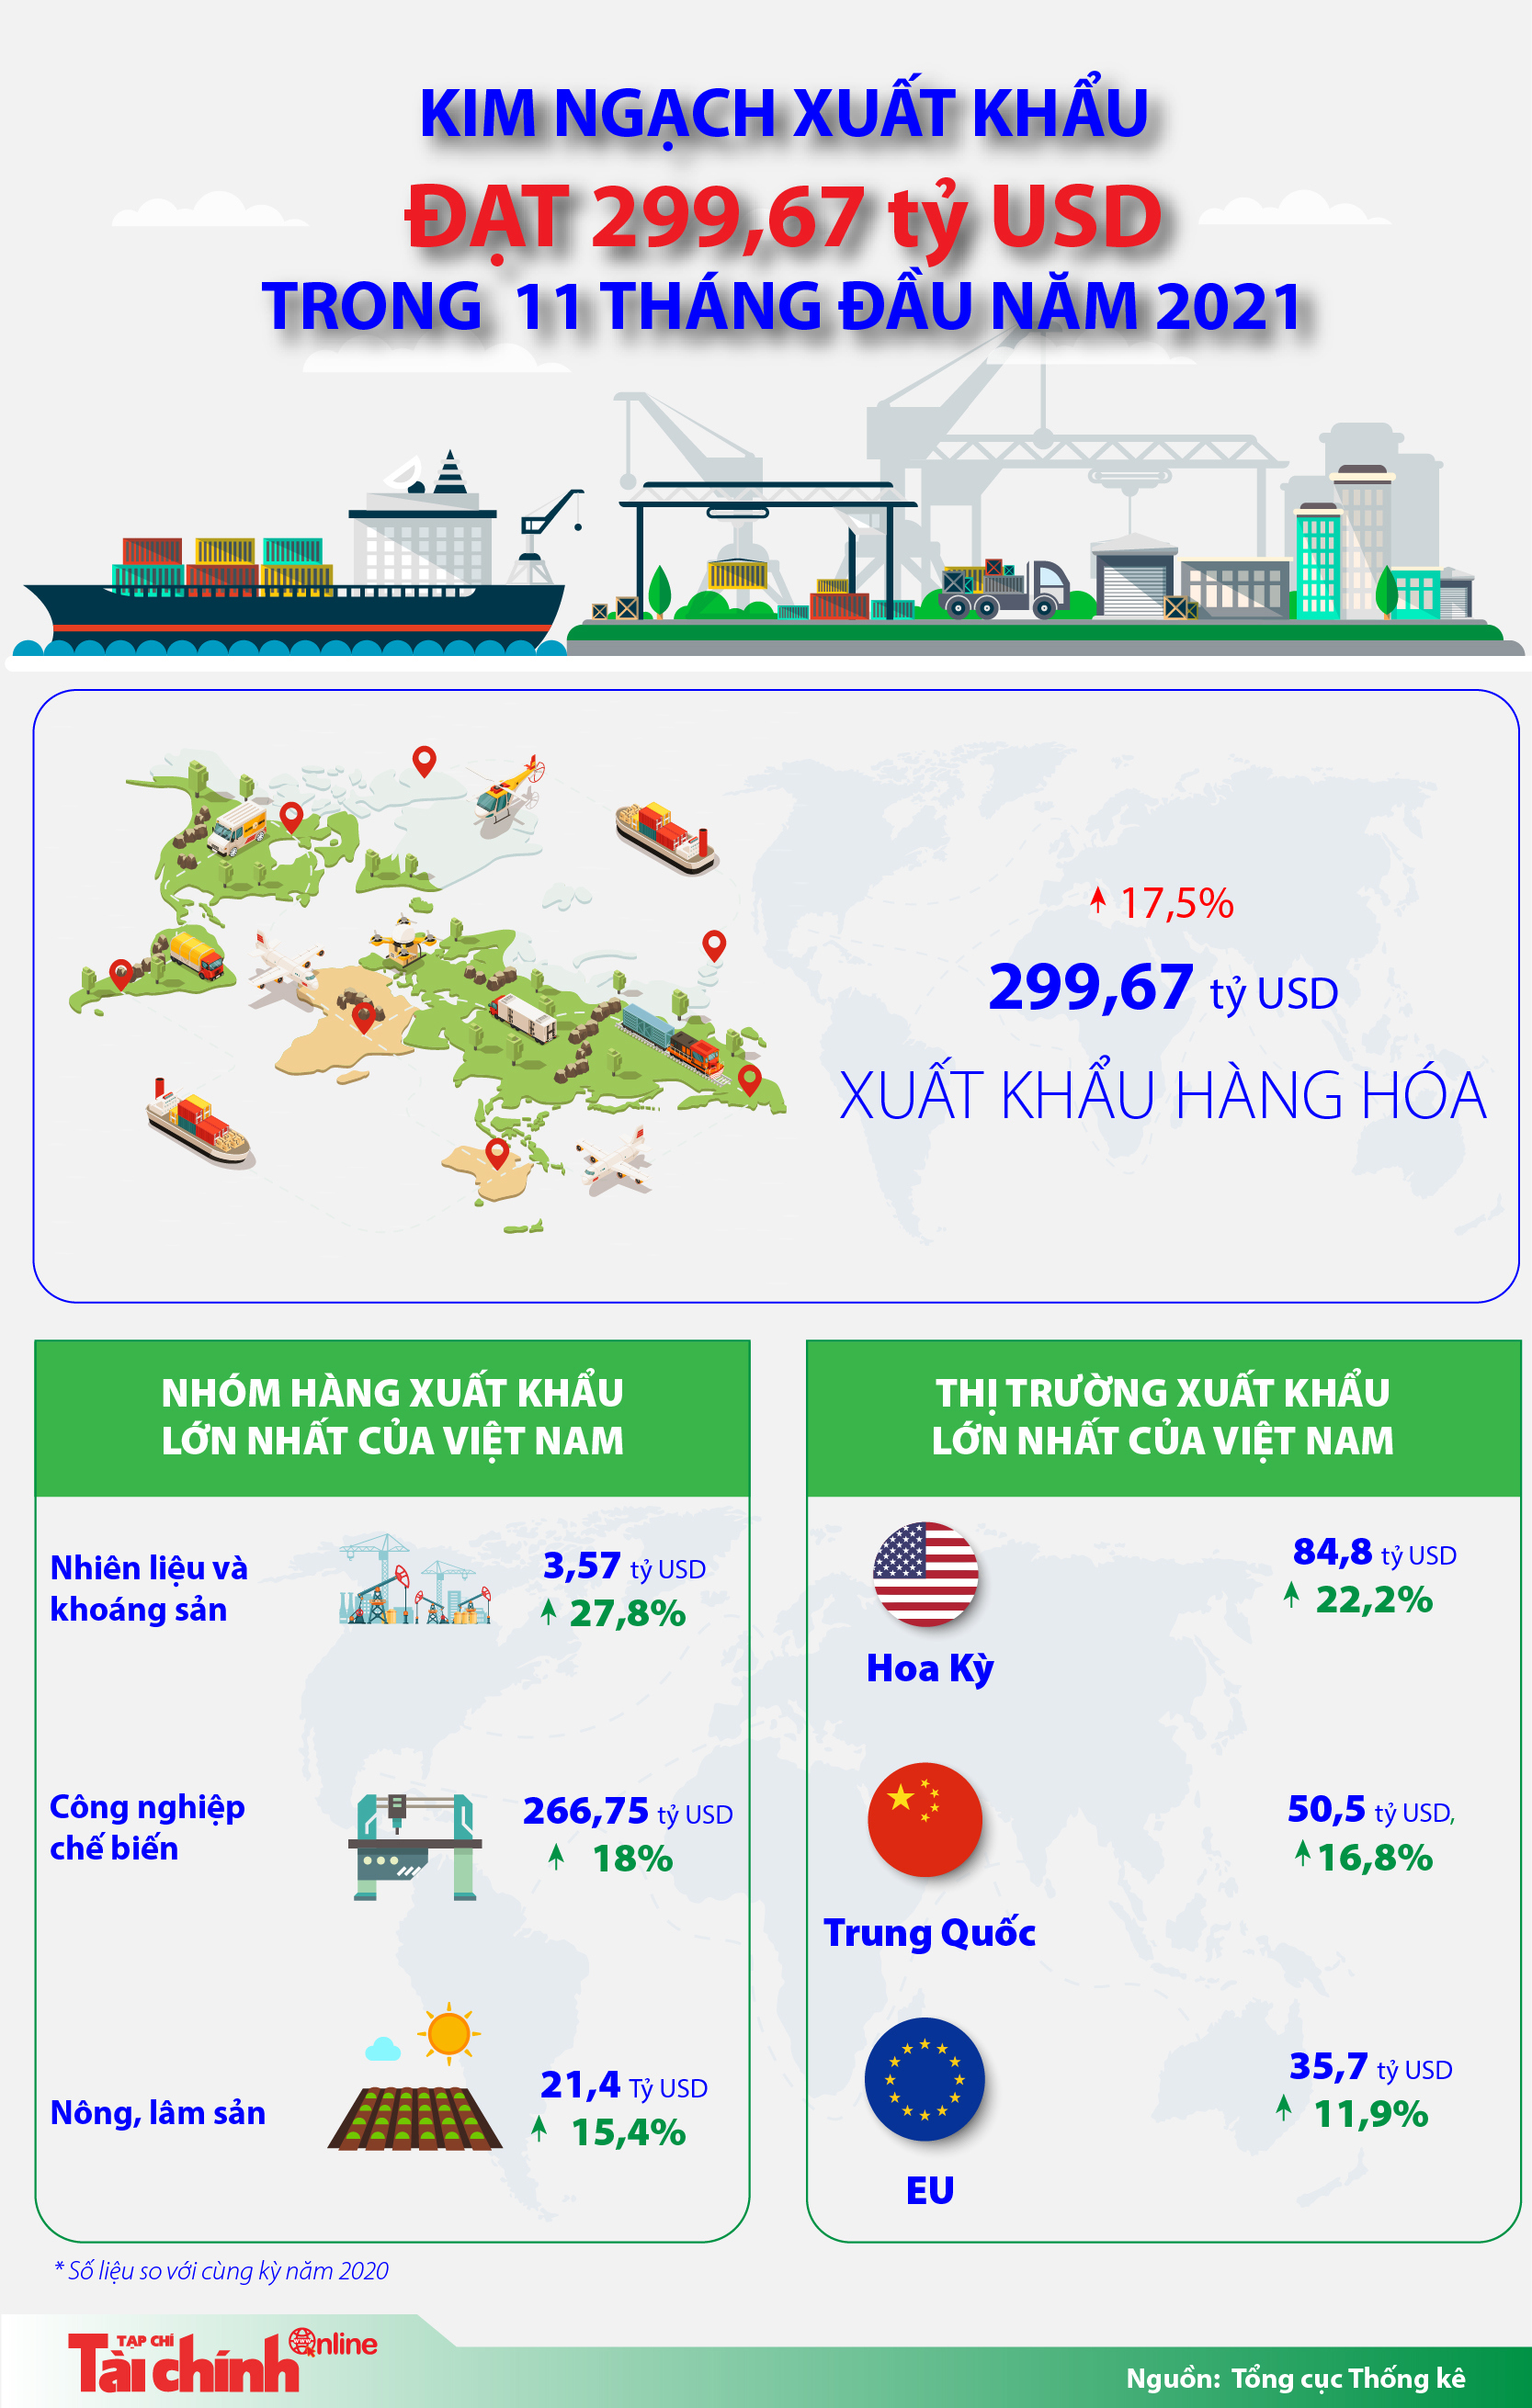 Kim ngạch xuất khẩu đạt 299,67 tỷ USD trong 11 tháng năm 2021 - Ảnh 1